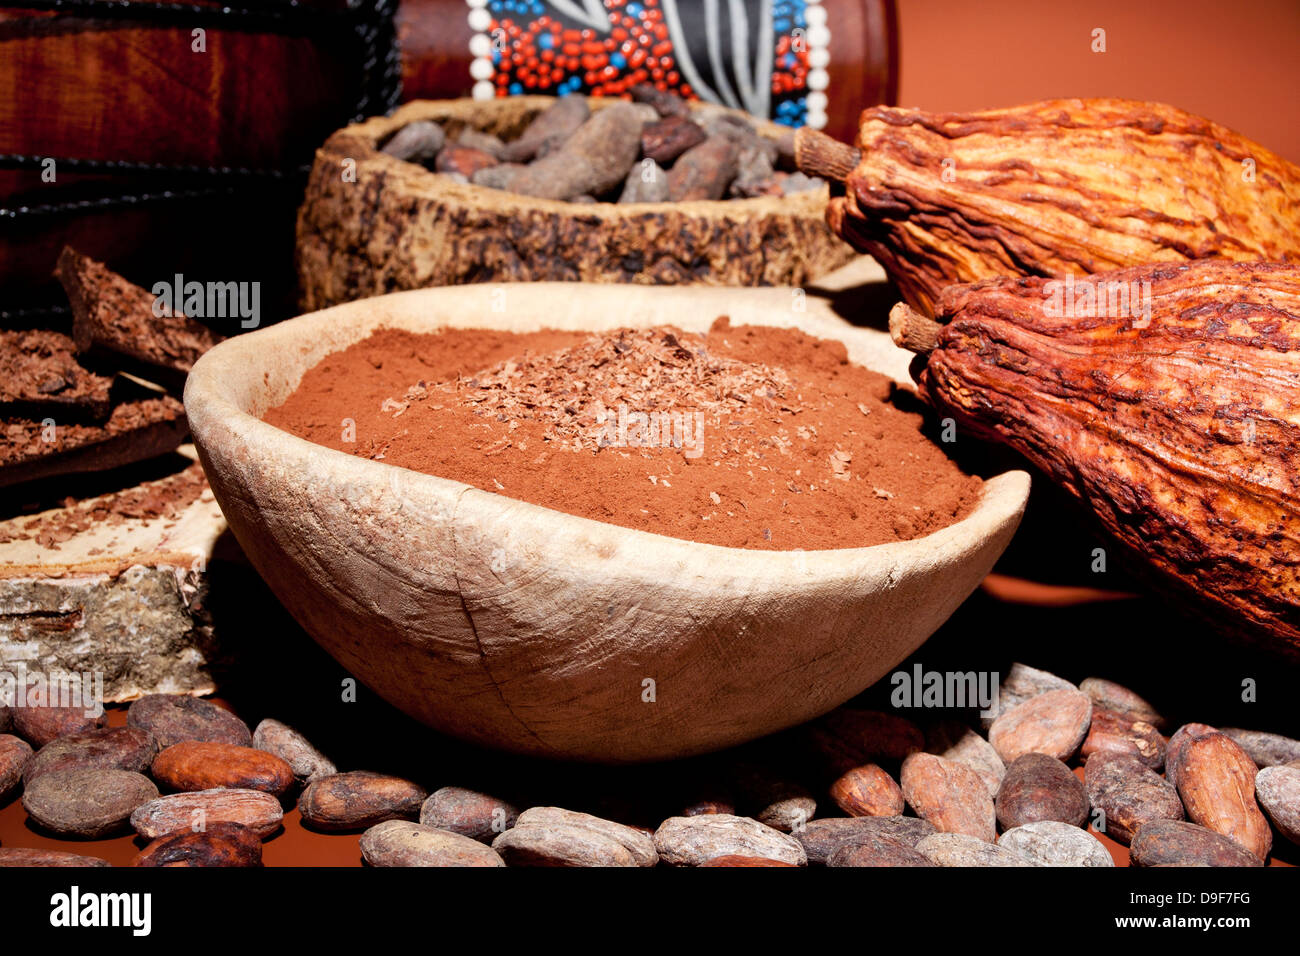 Avec les fèves de cacao Poudre de cacao et de chocolat, les fèves de cacao avec la poudre de cacao et chocolat Banque D'Images